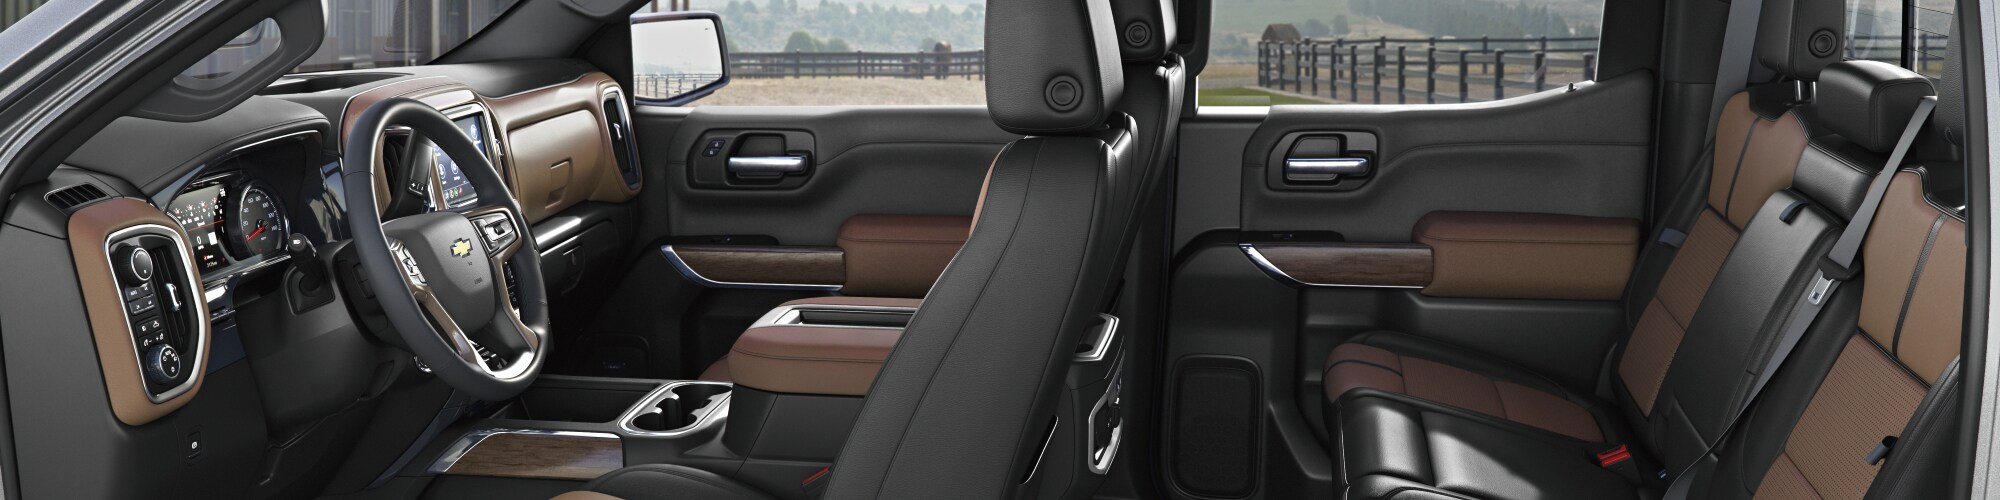 New Chevrolet Silverado 1500 Interior